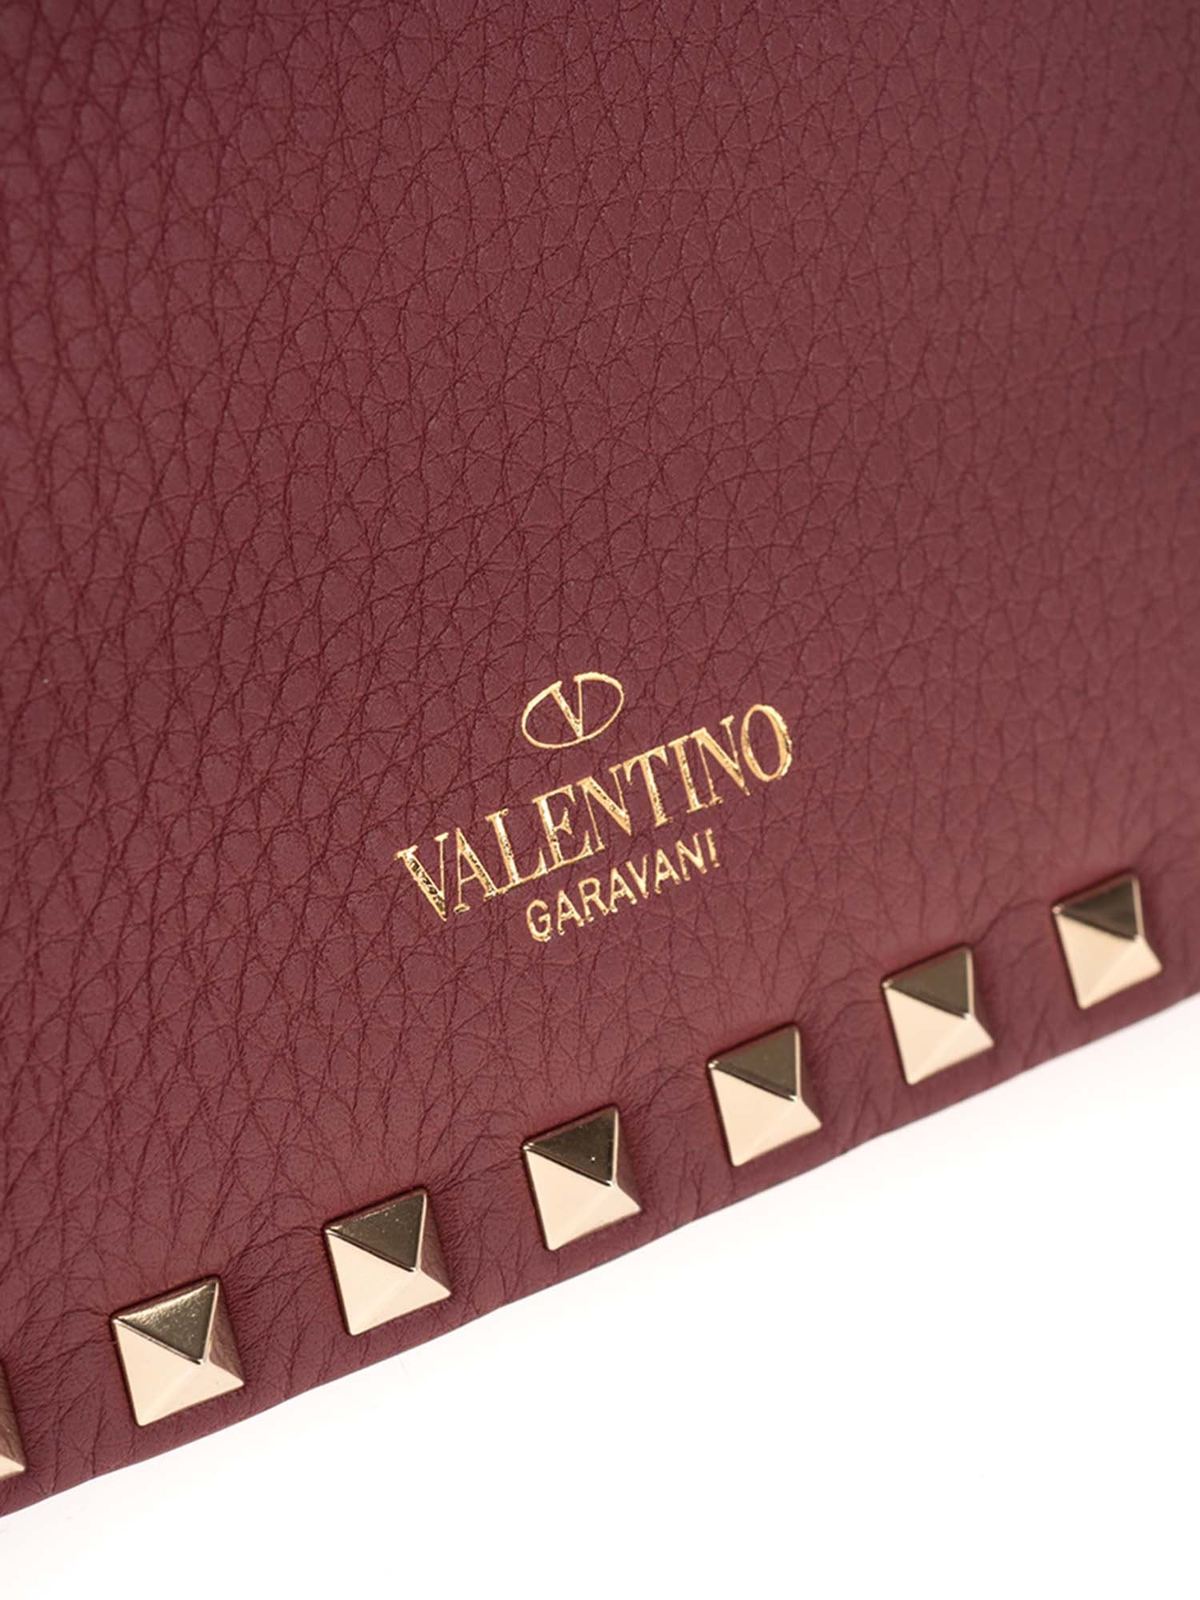 Valentino Garavani Women's 100% Leather Burgundy Rockstud Clutch